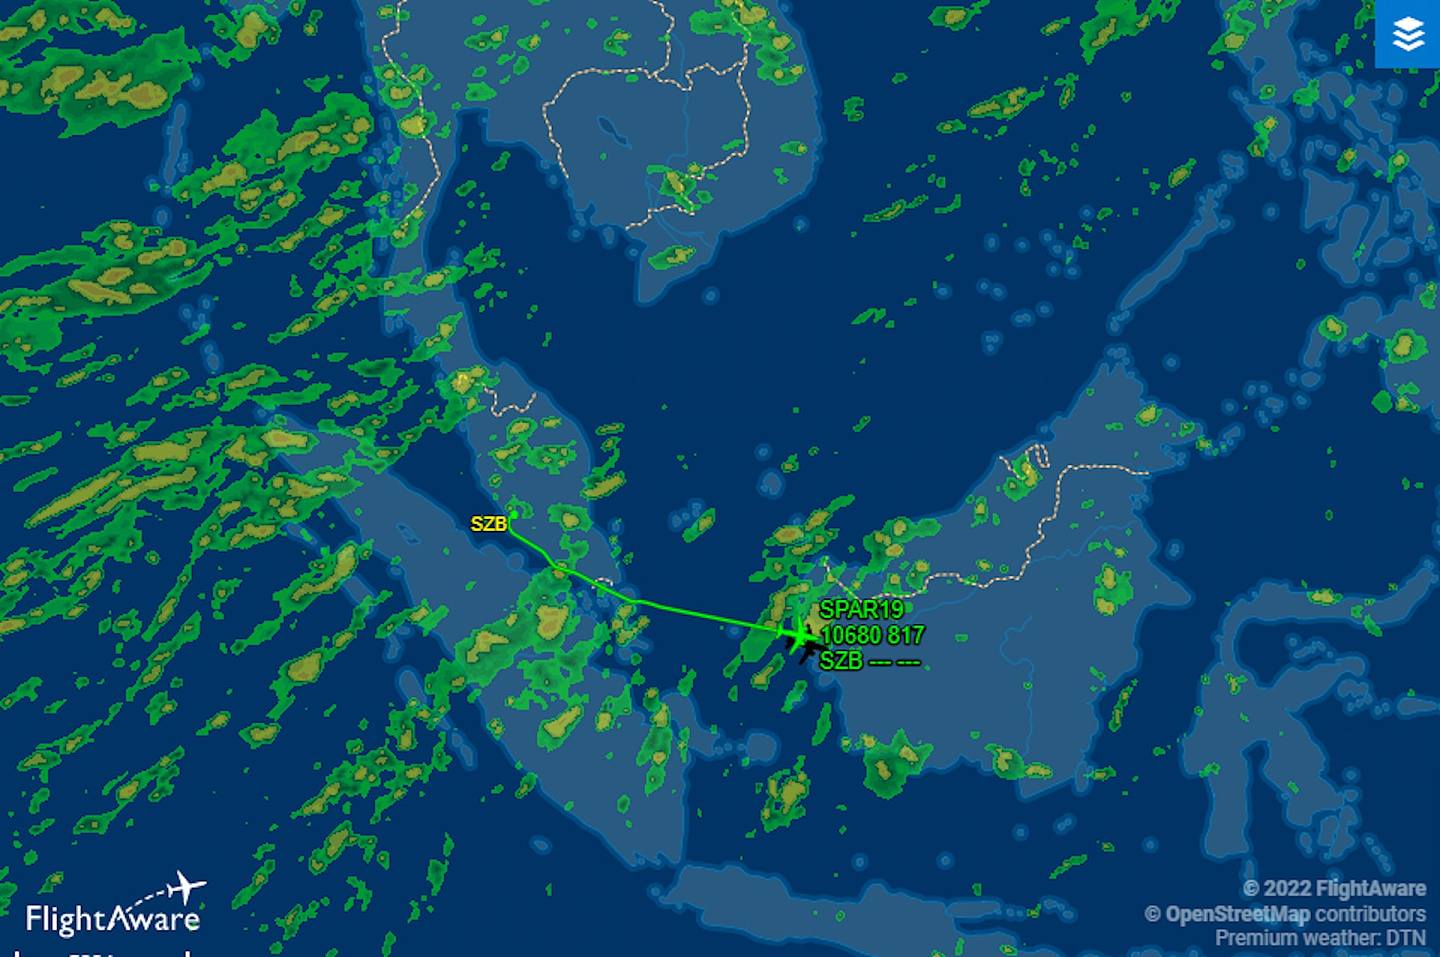 盛传接载佩洛西的专机SPAR19已从马来西亚吉隆坡起飞，目的地未明。 （FlightAware）